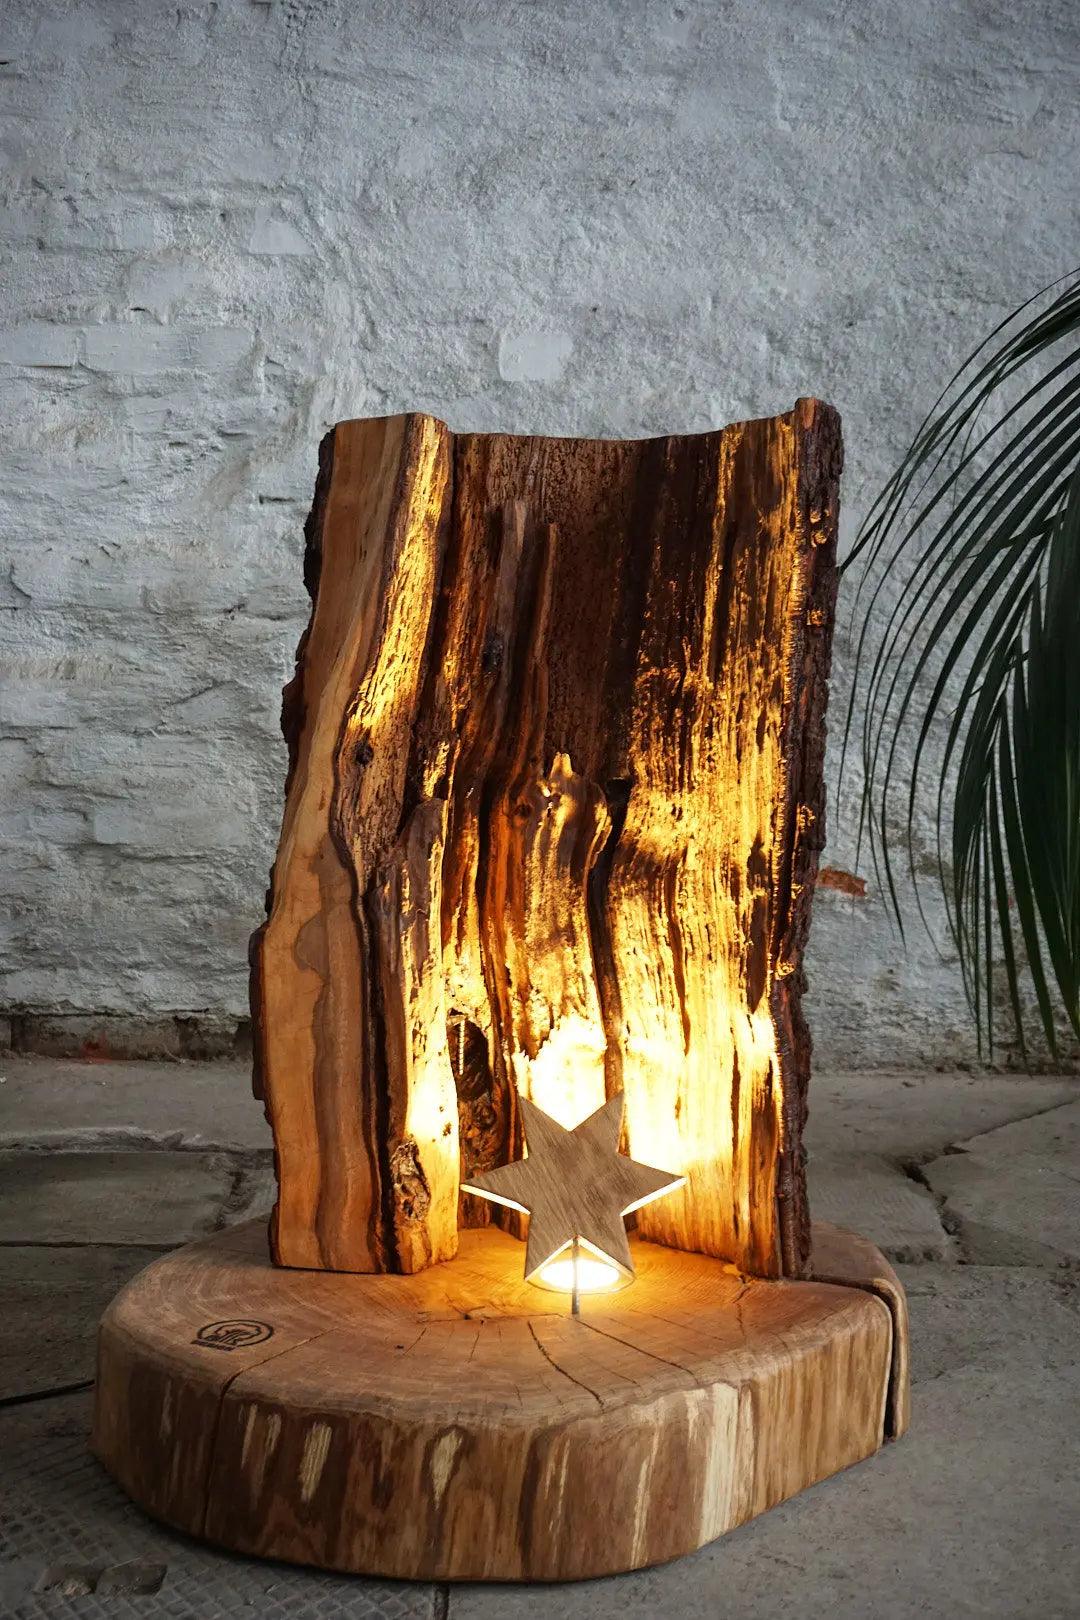 Stehlampe "Holz Stern"  Baumzeit Design - Online Shop für exklusive Massivholz- und Katzenmöbel